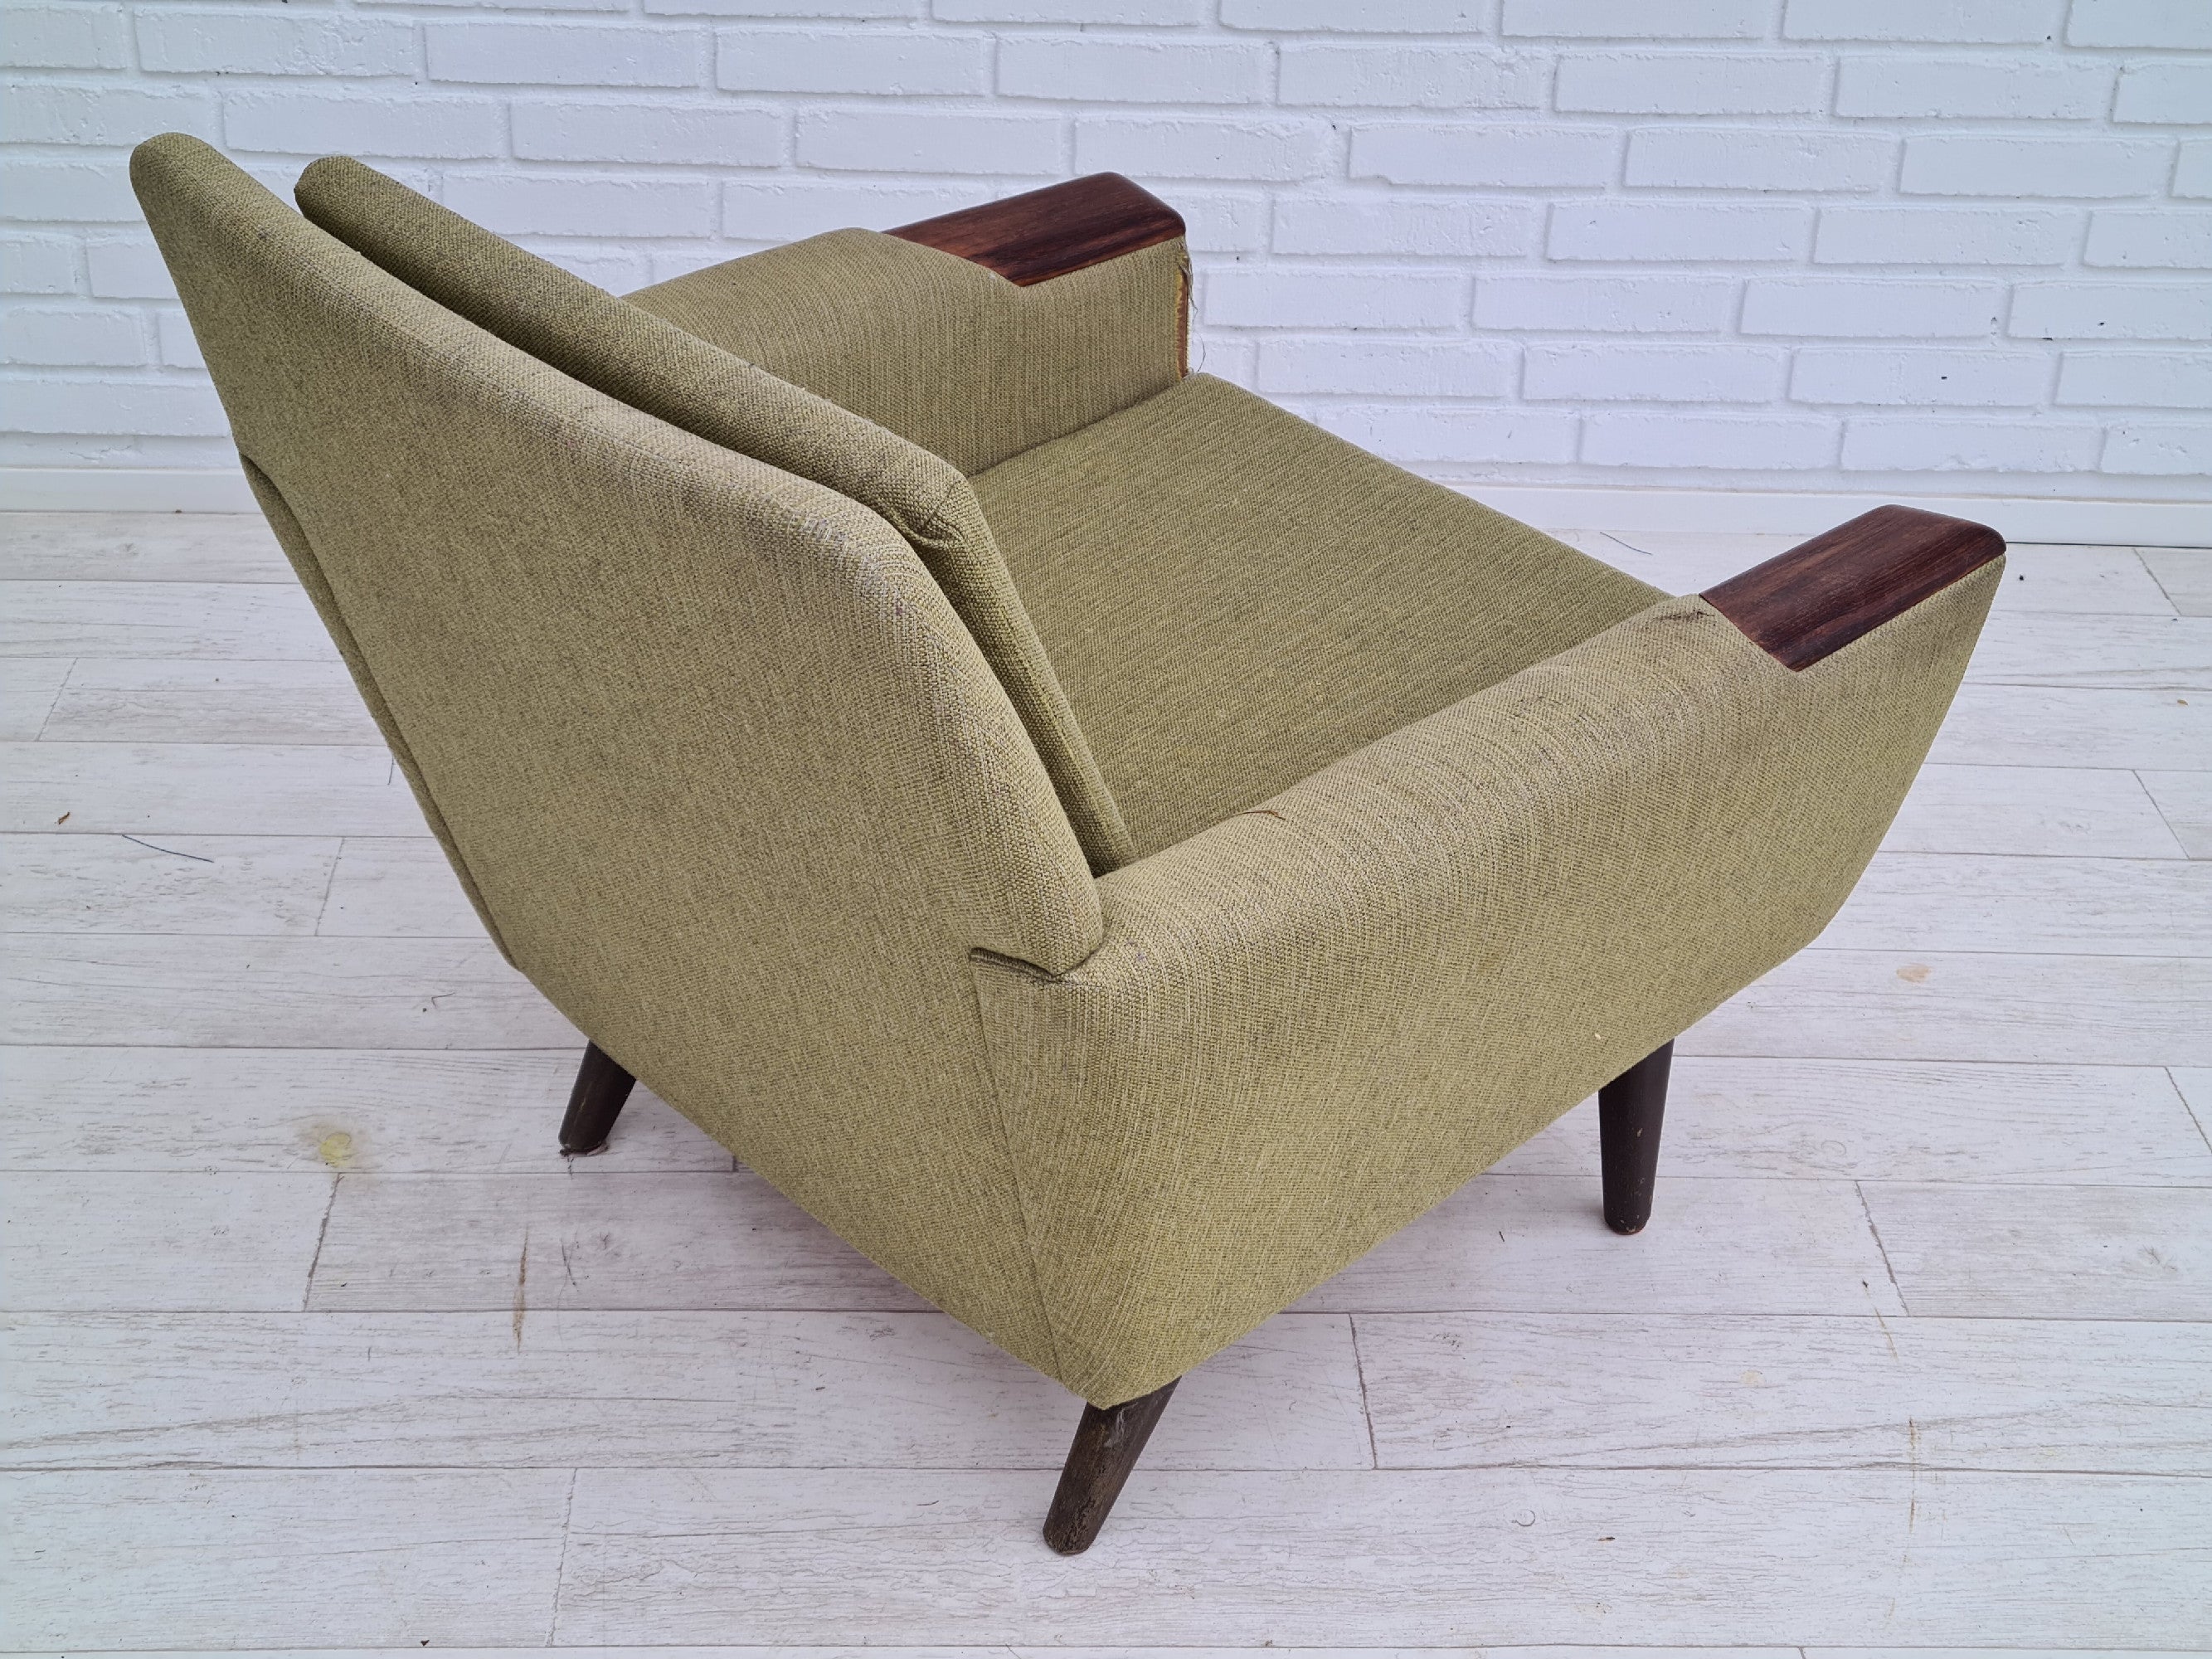 Dansk lænestol + 3 pers. sofa, palisander træ, 70erne - til renovering